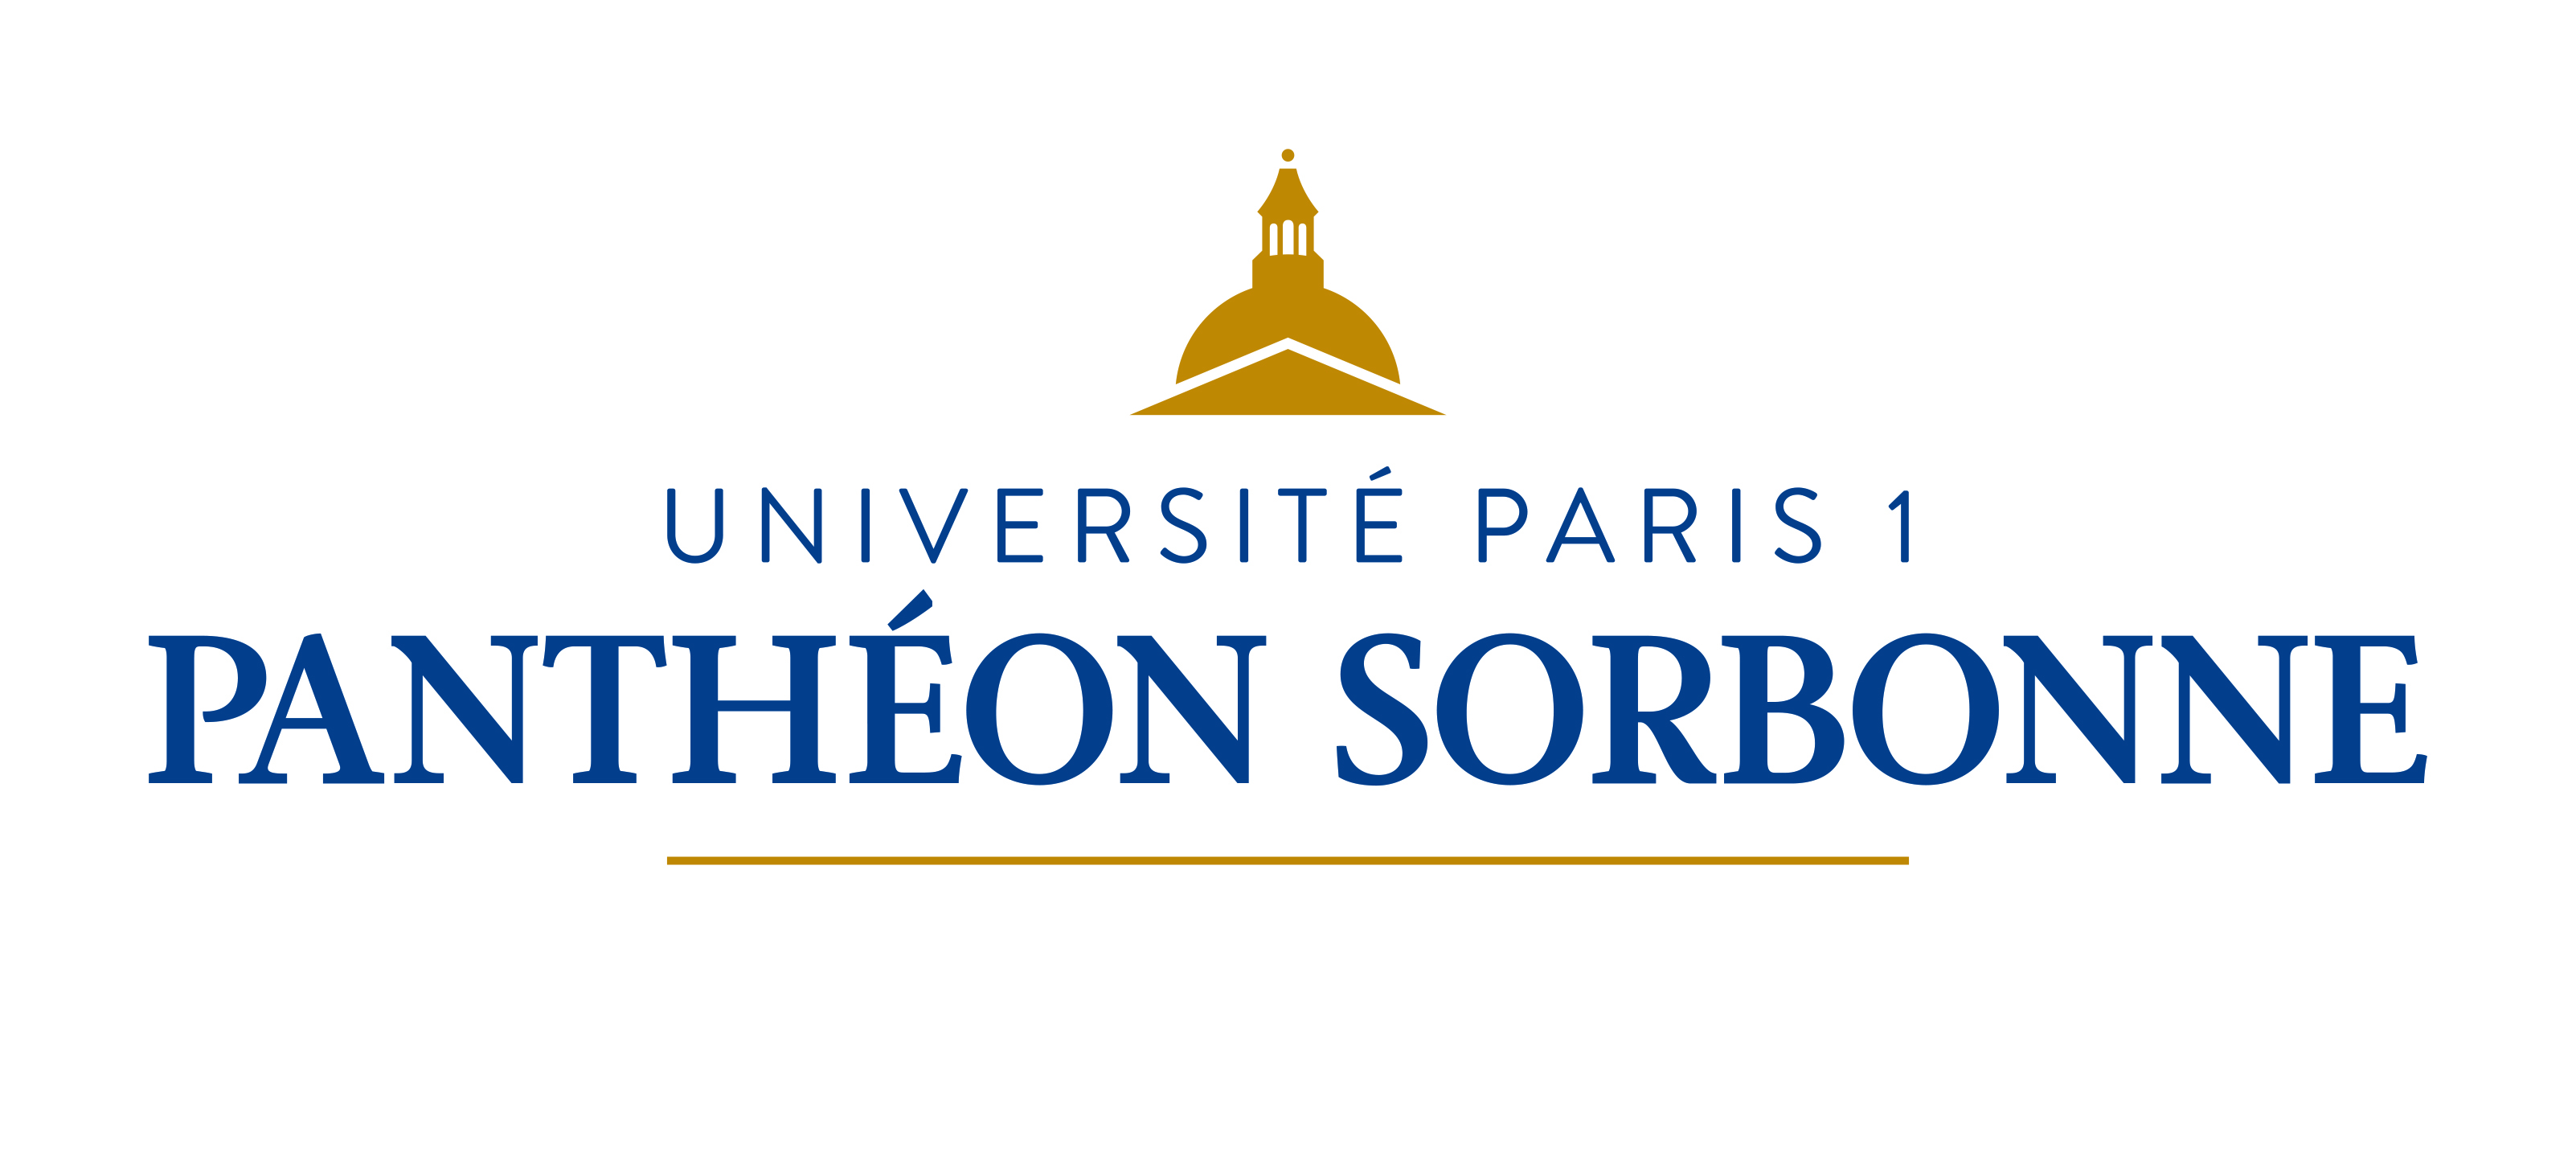 جامعة باريس 1 بانثيون السوربون